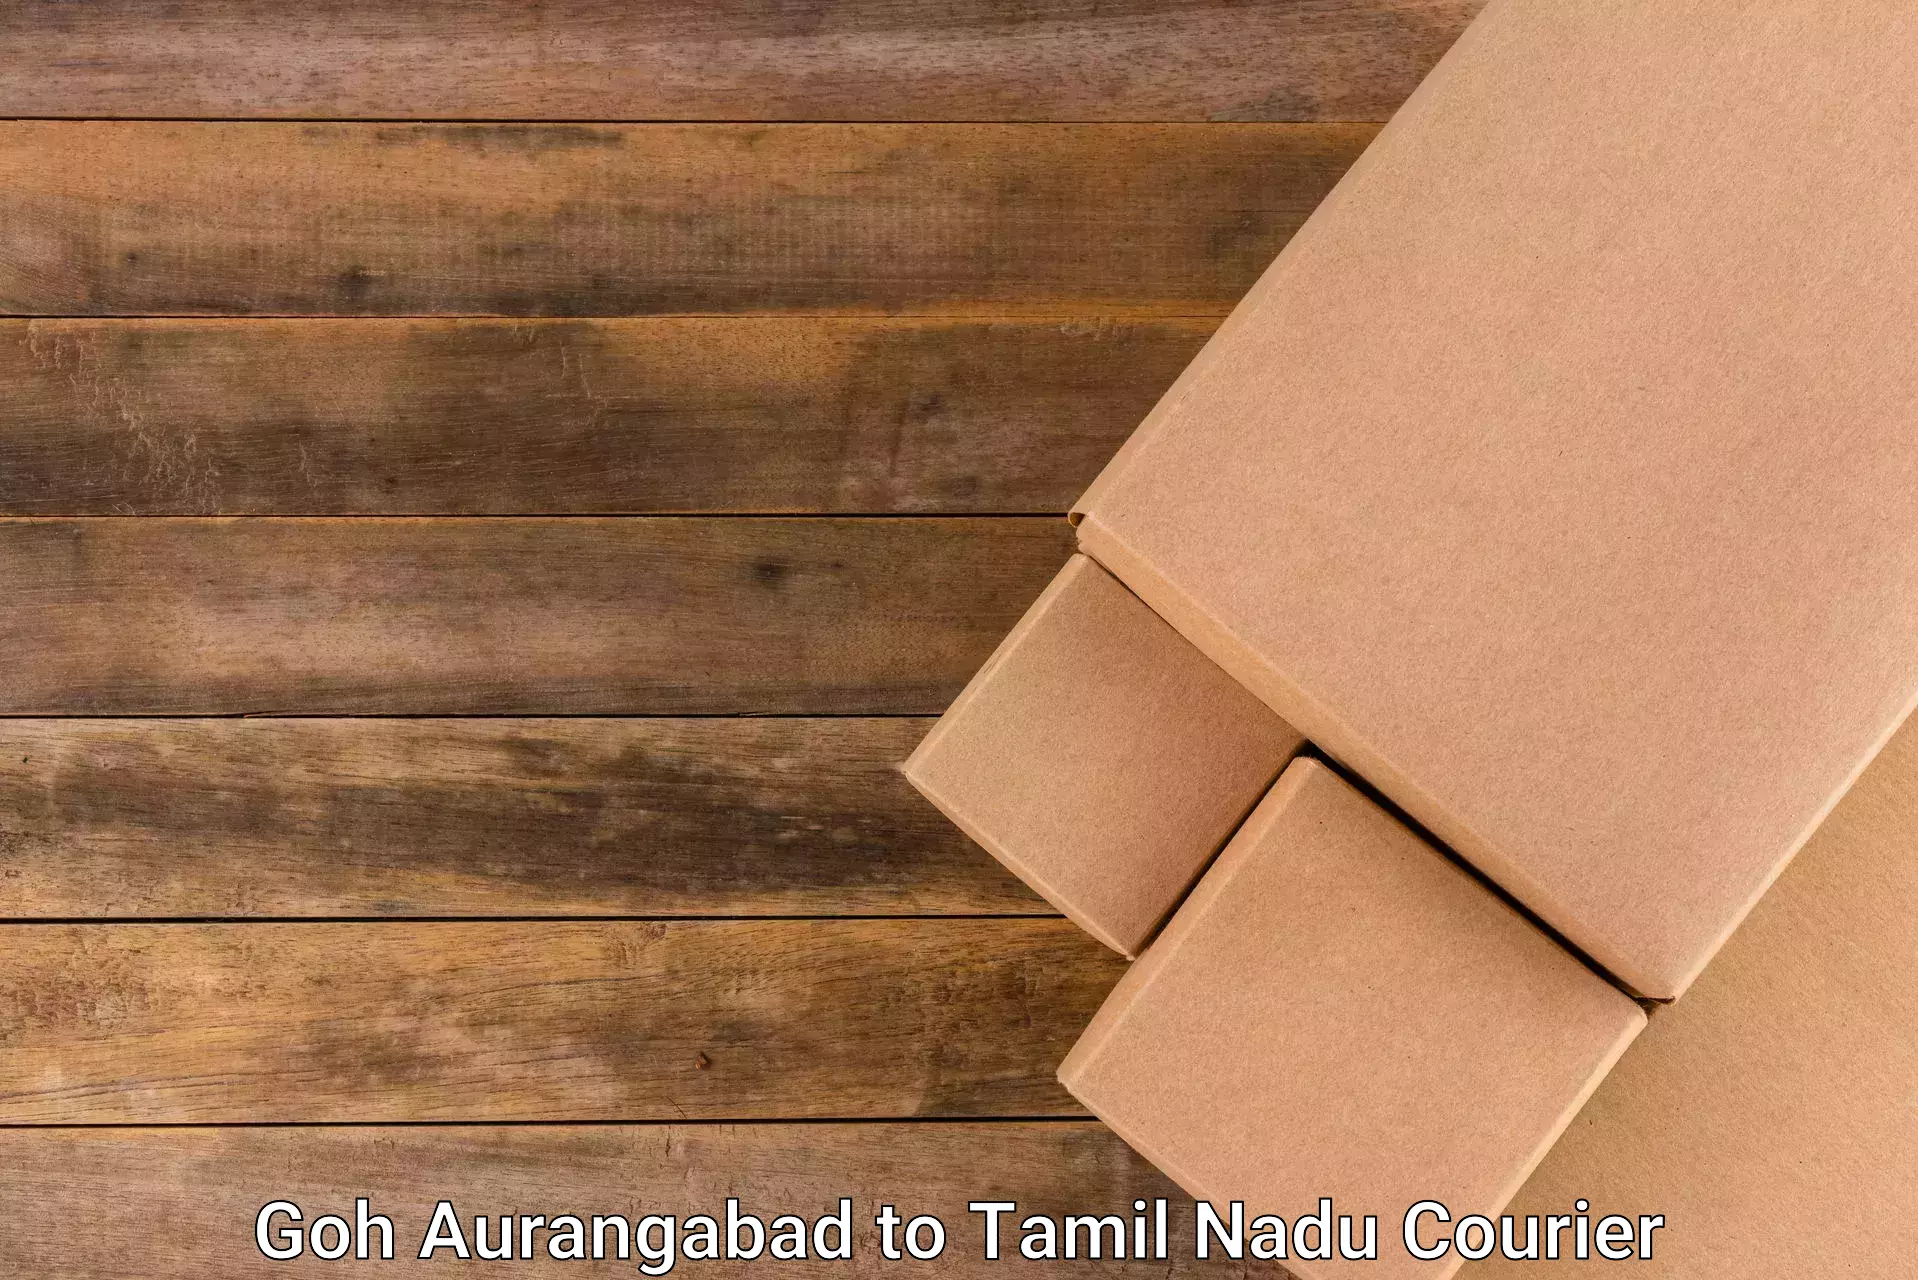 Global delivery options Goh Aurangabad to Virudhunagar